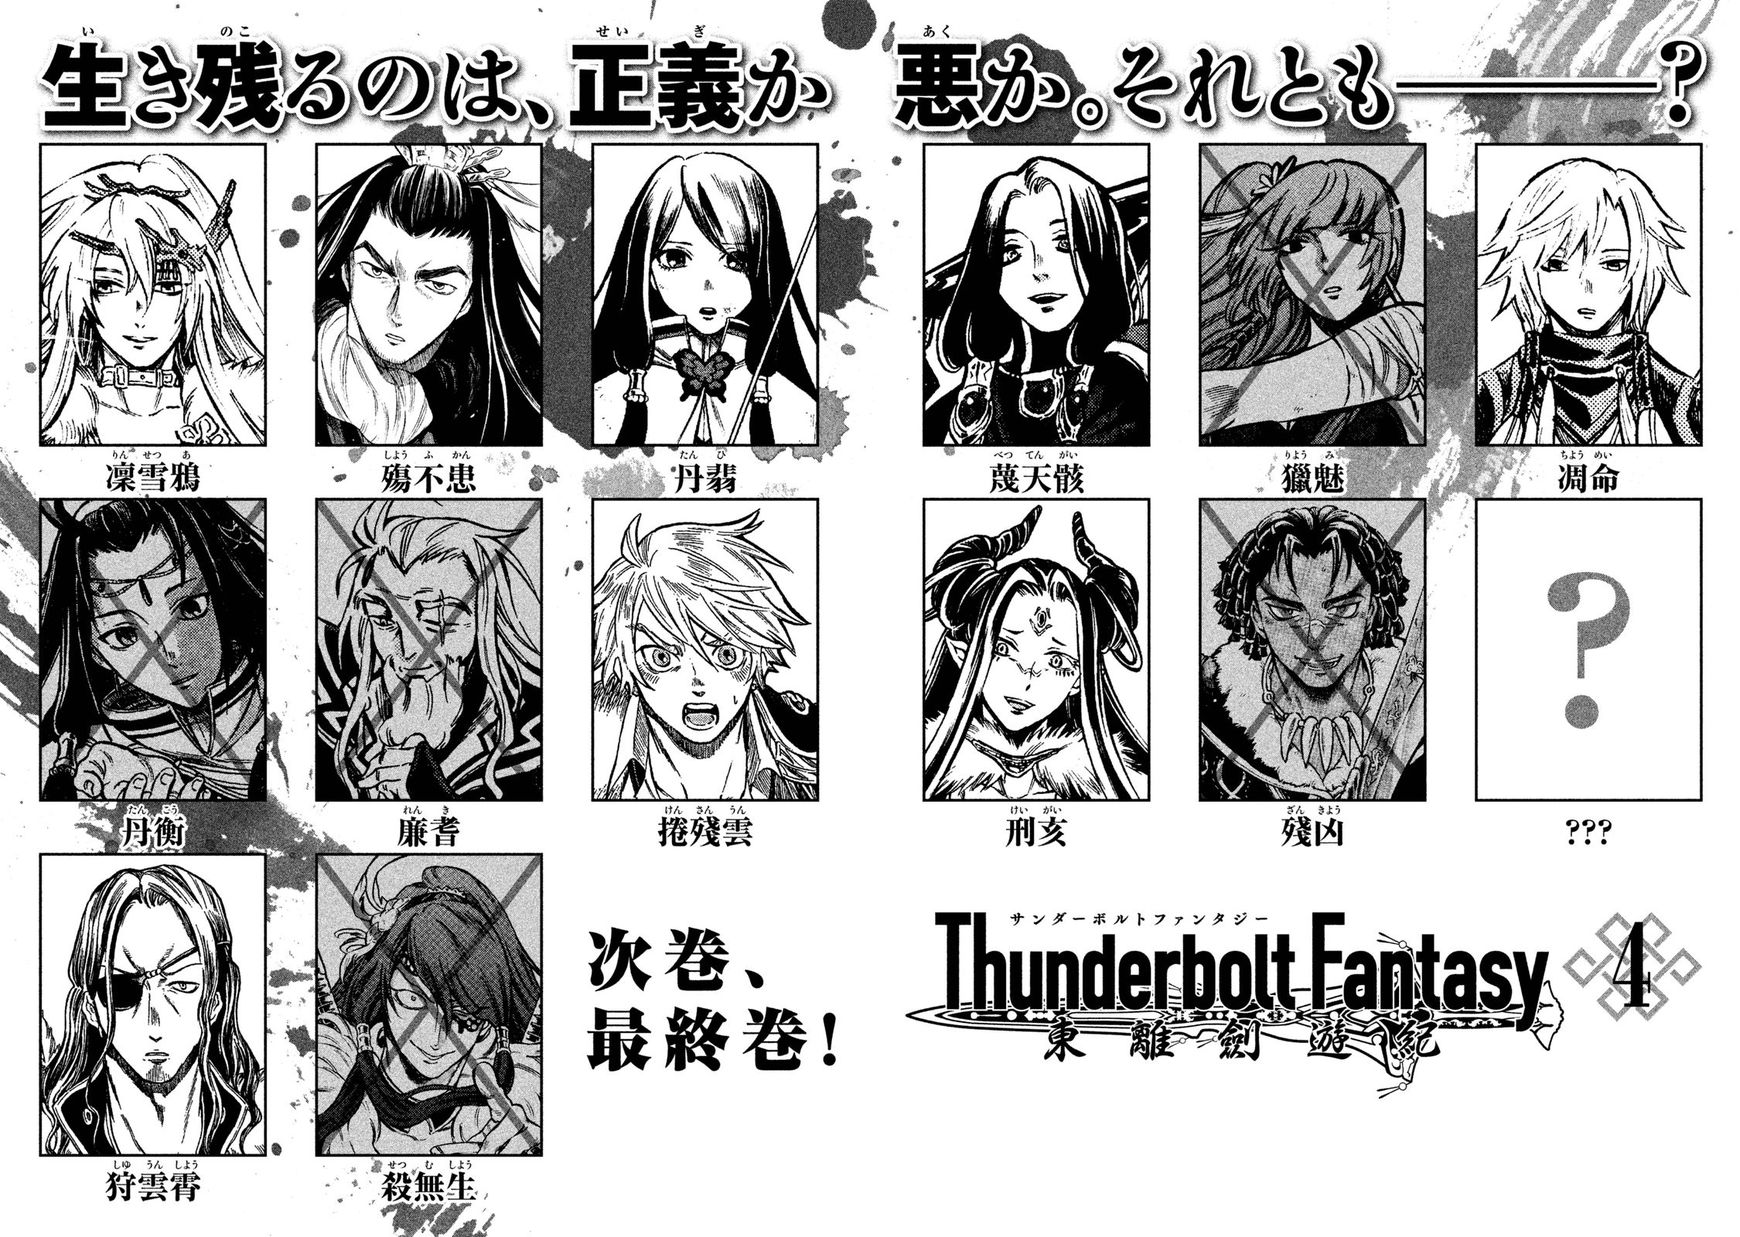 Thunderbolt Fantasy 25 22